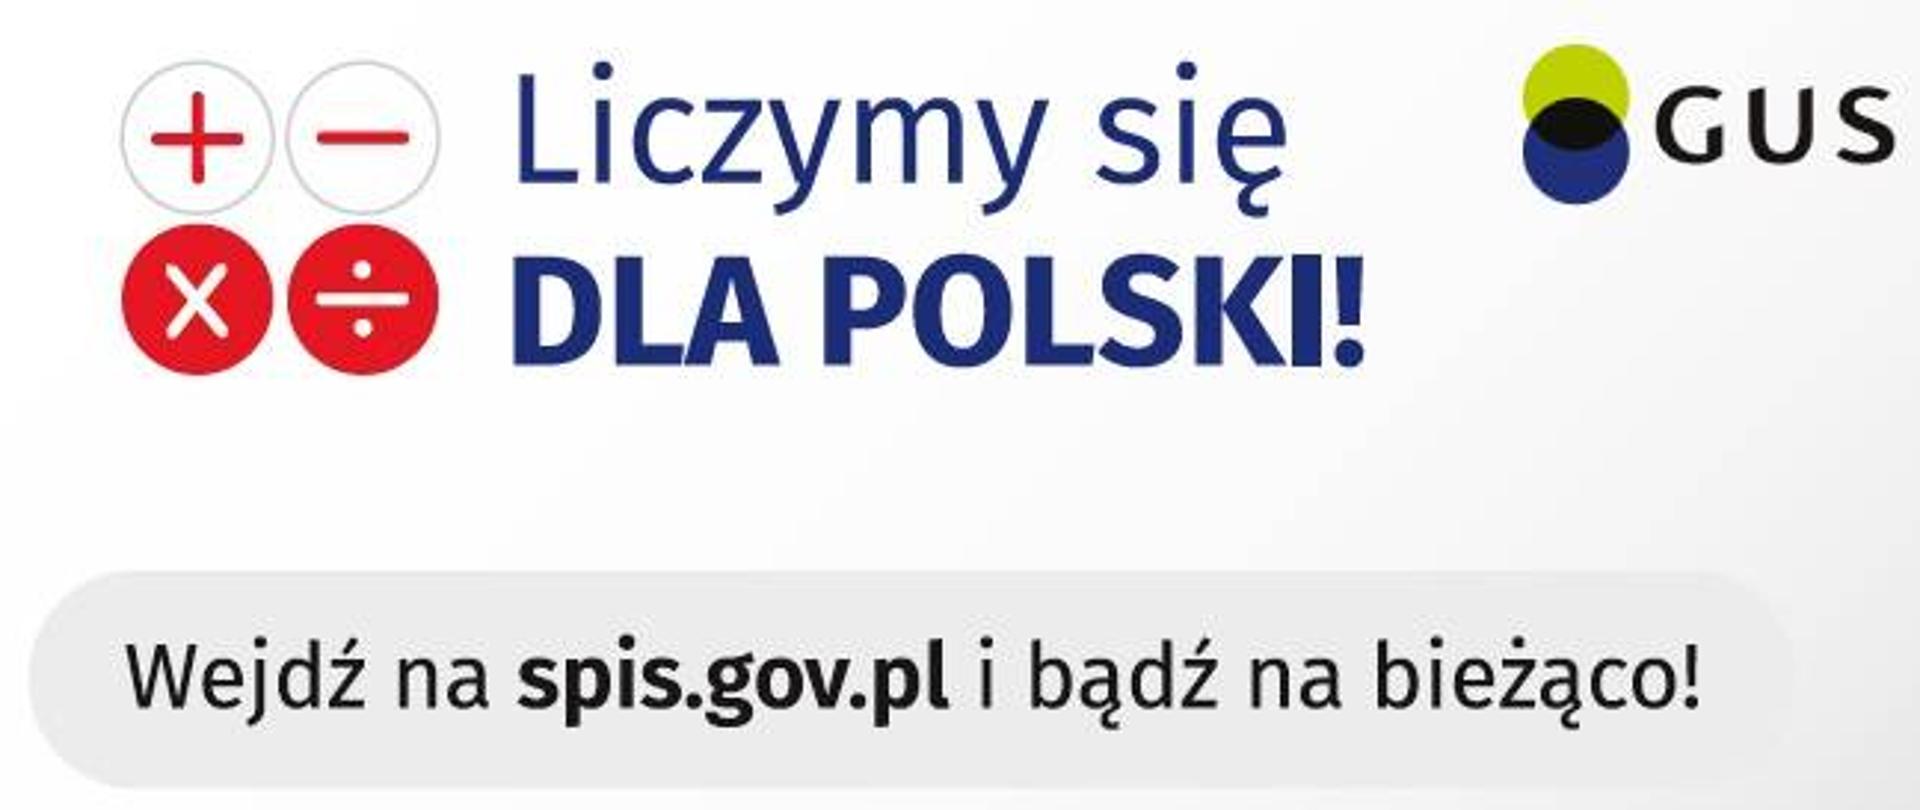 Napis "Liczymy się DLA POLSKI". Pod nim tekst "wejdź na spis.gov.pl i bądź na bieżąco!"